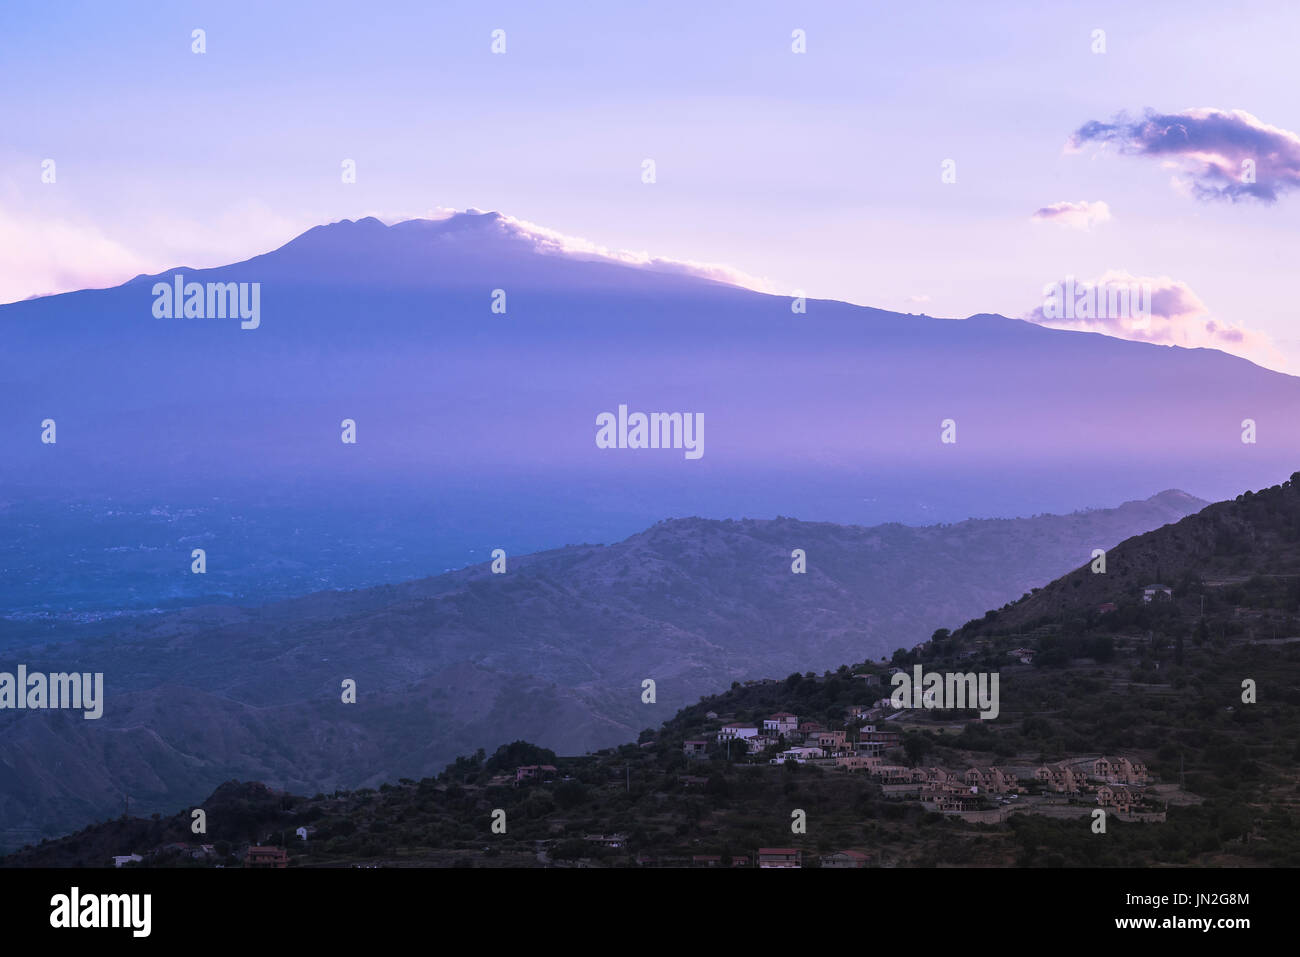 Sicile montagne, vue au crépuscule de l'Etna et les collines entourant Taormina baigné de lumière bleue douce, Sicile, Italie Banque D'Images